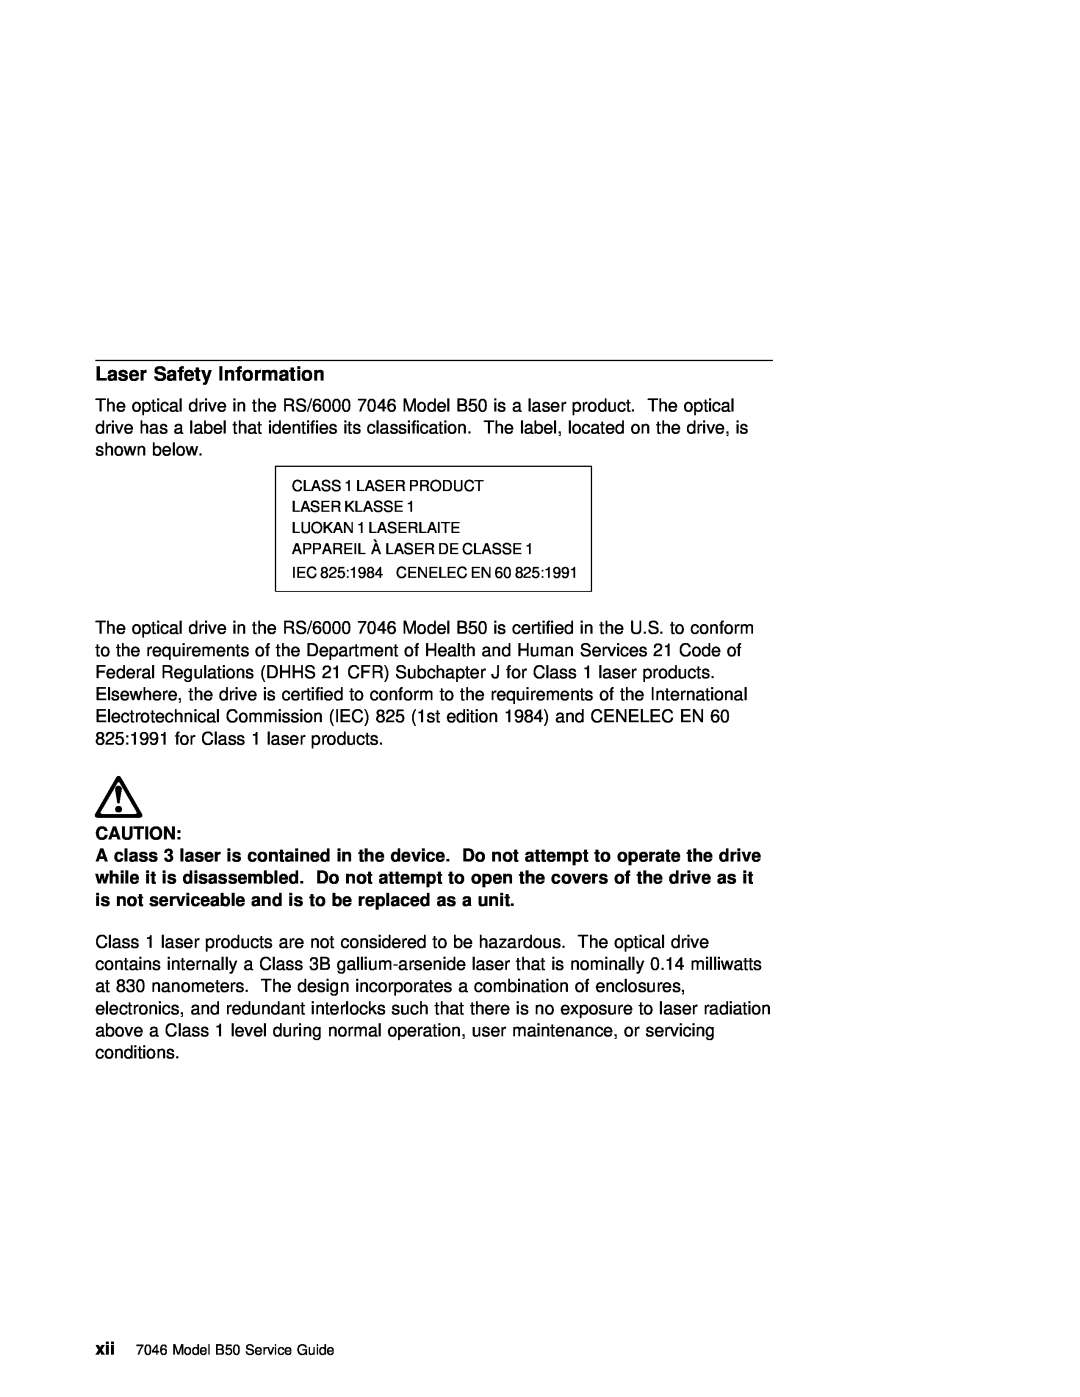 IBM B50 manual Laser Safety Information 